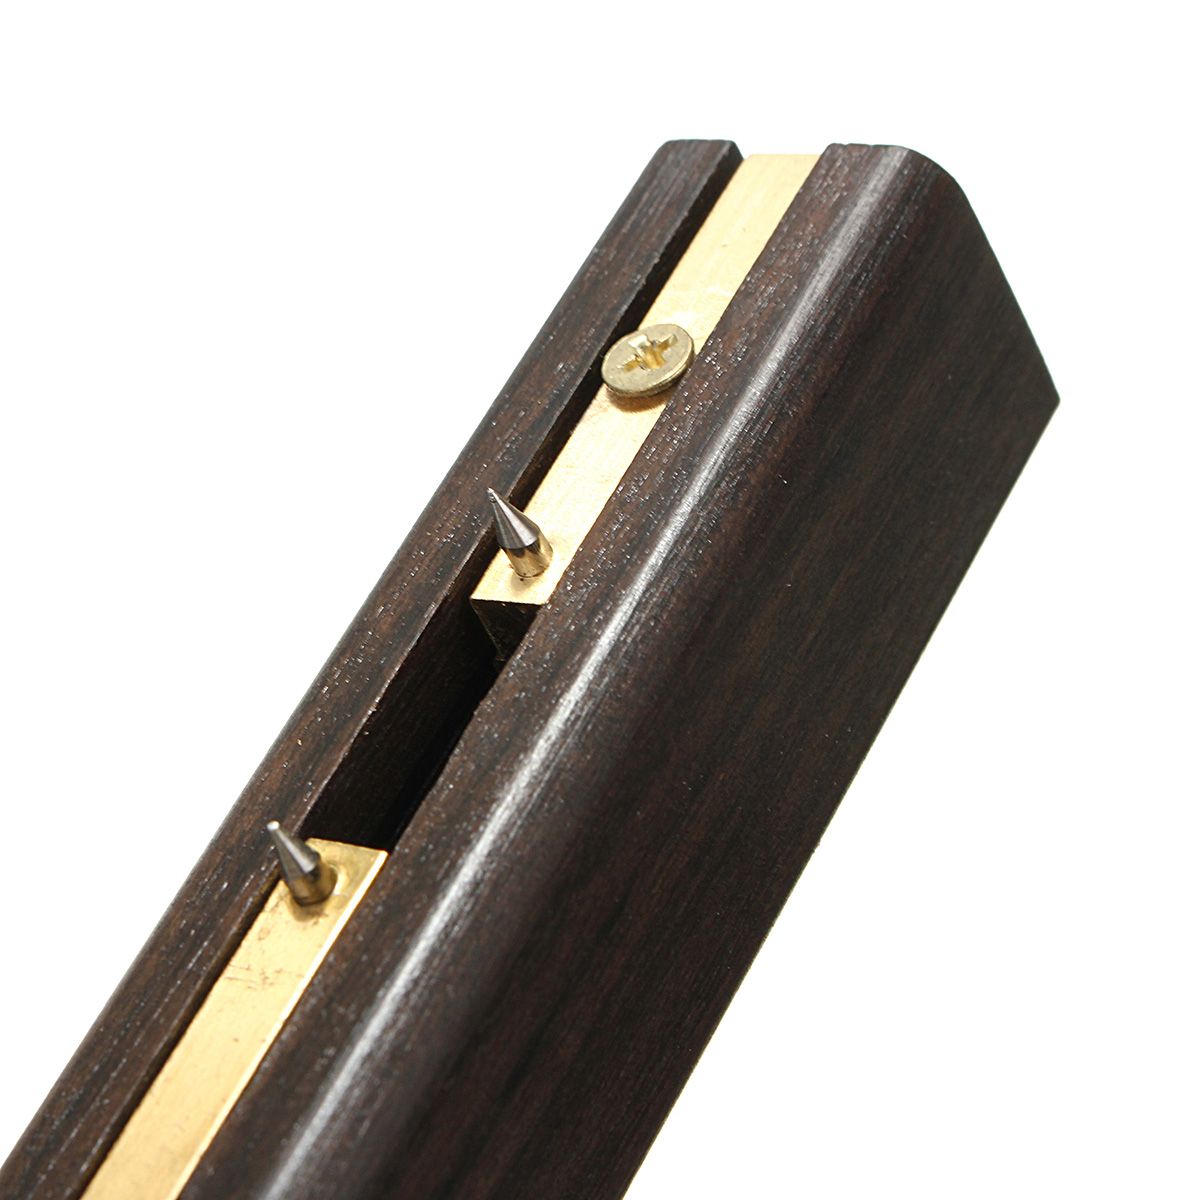 8-Inch-EbonyPure-Copper-Woodworking-Tool-Screw-Cutting-Gauge-Mark-Scraper-Scribers-1253920